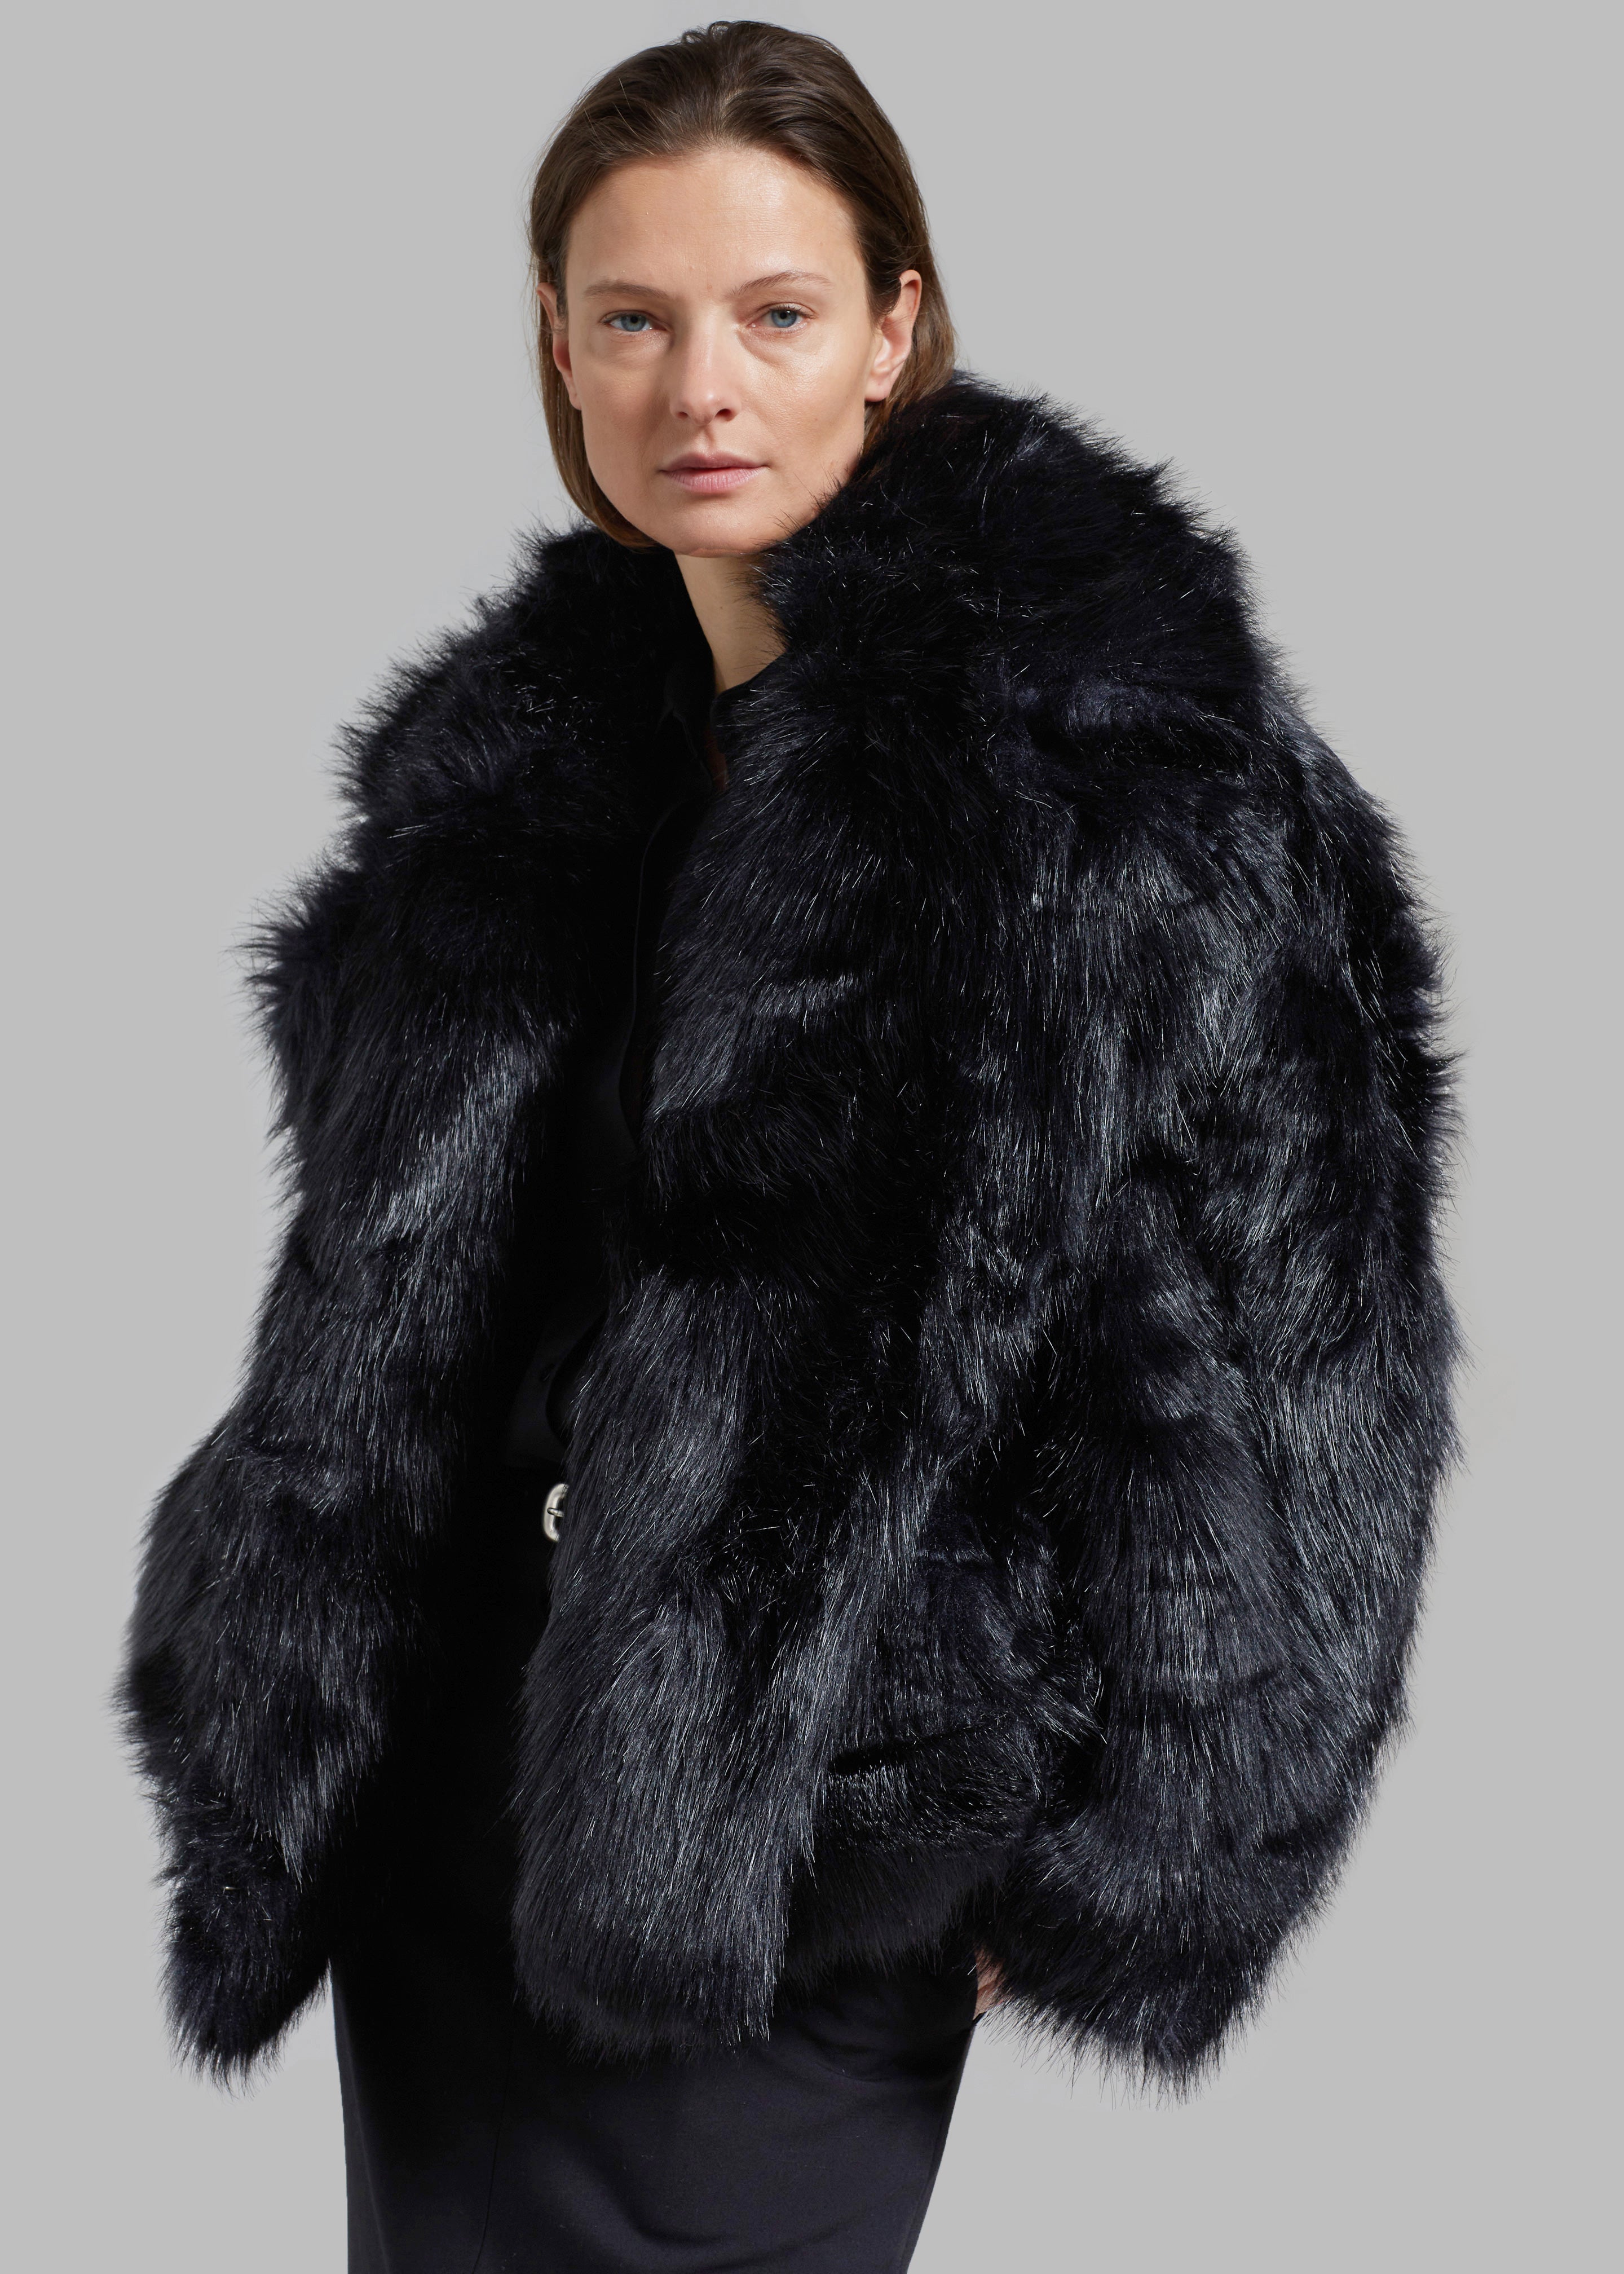 The Frankie Shop Fallon Short Faux Fur Coat - Black